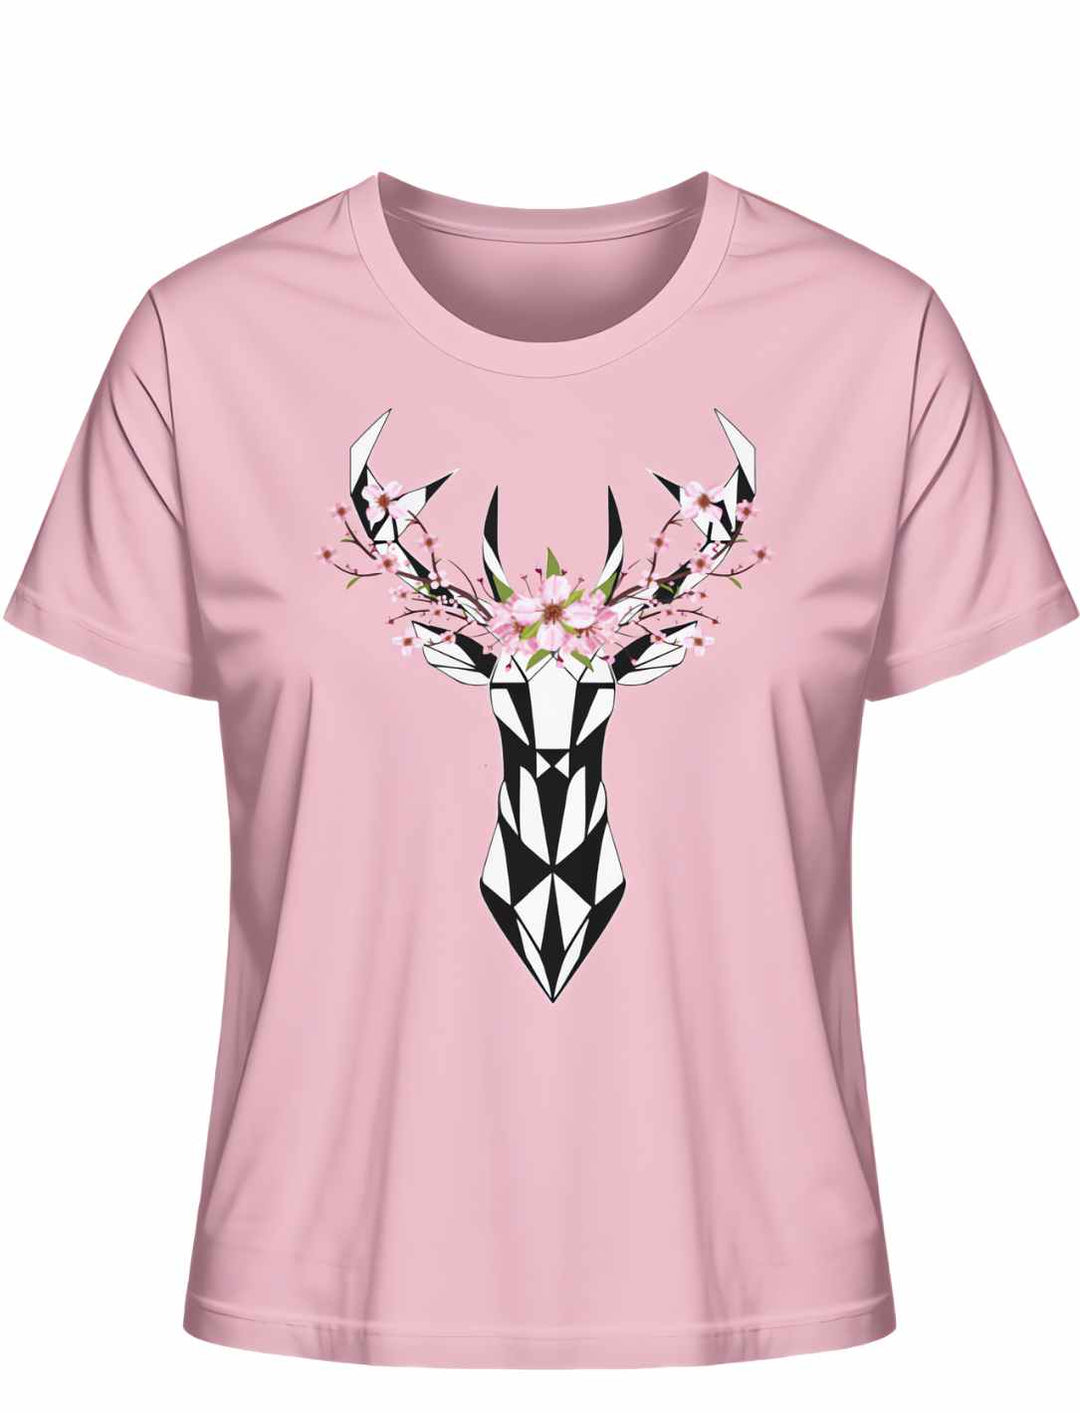 "Sakura Deer" Damen-T-Shirt in Cotton Pink, flach liegend, mit einem schwarzen Hirsch-Silhouetten-Design, umringt von Sakura-Blüten, als Tribut an die japanische Kirschblütensaison.